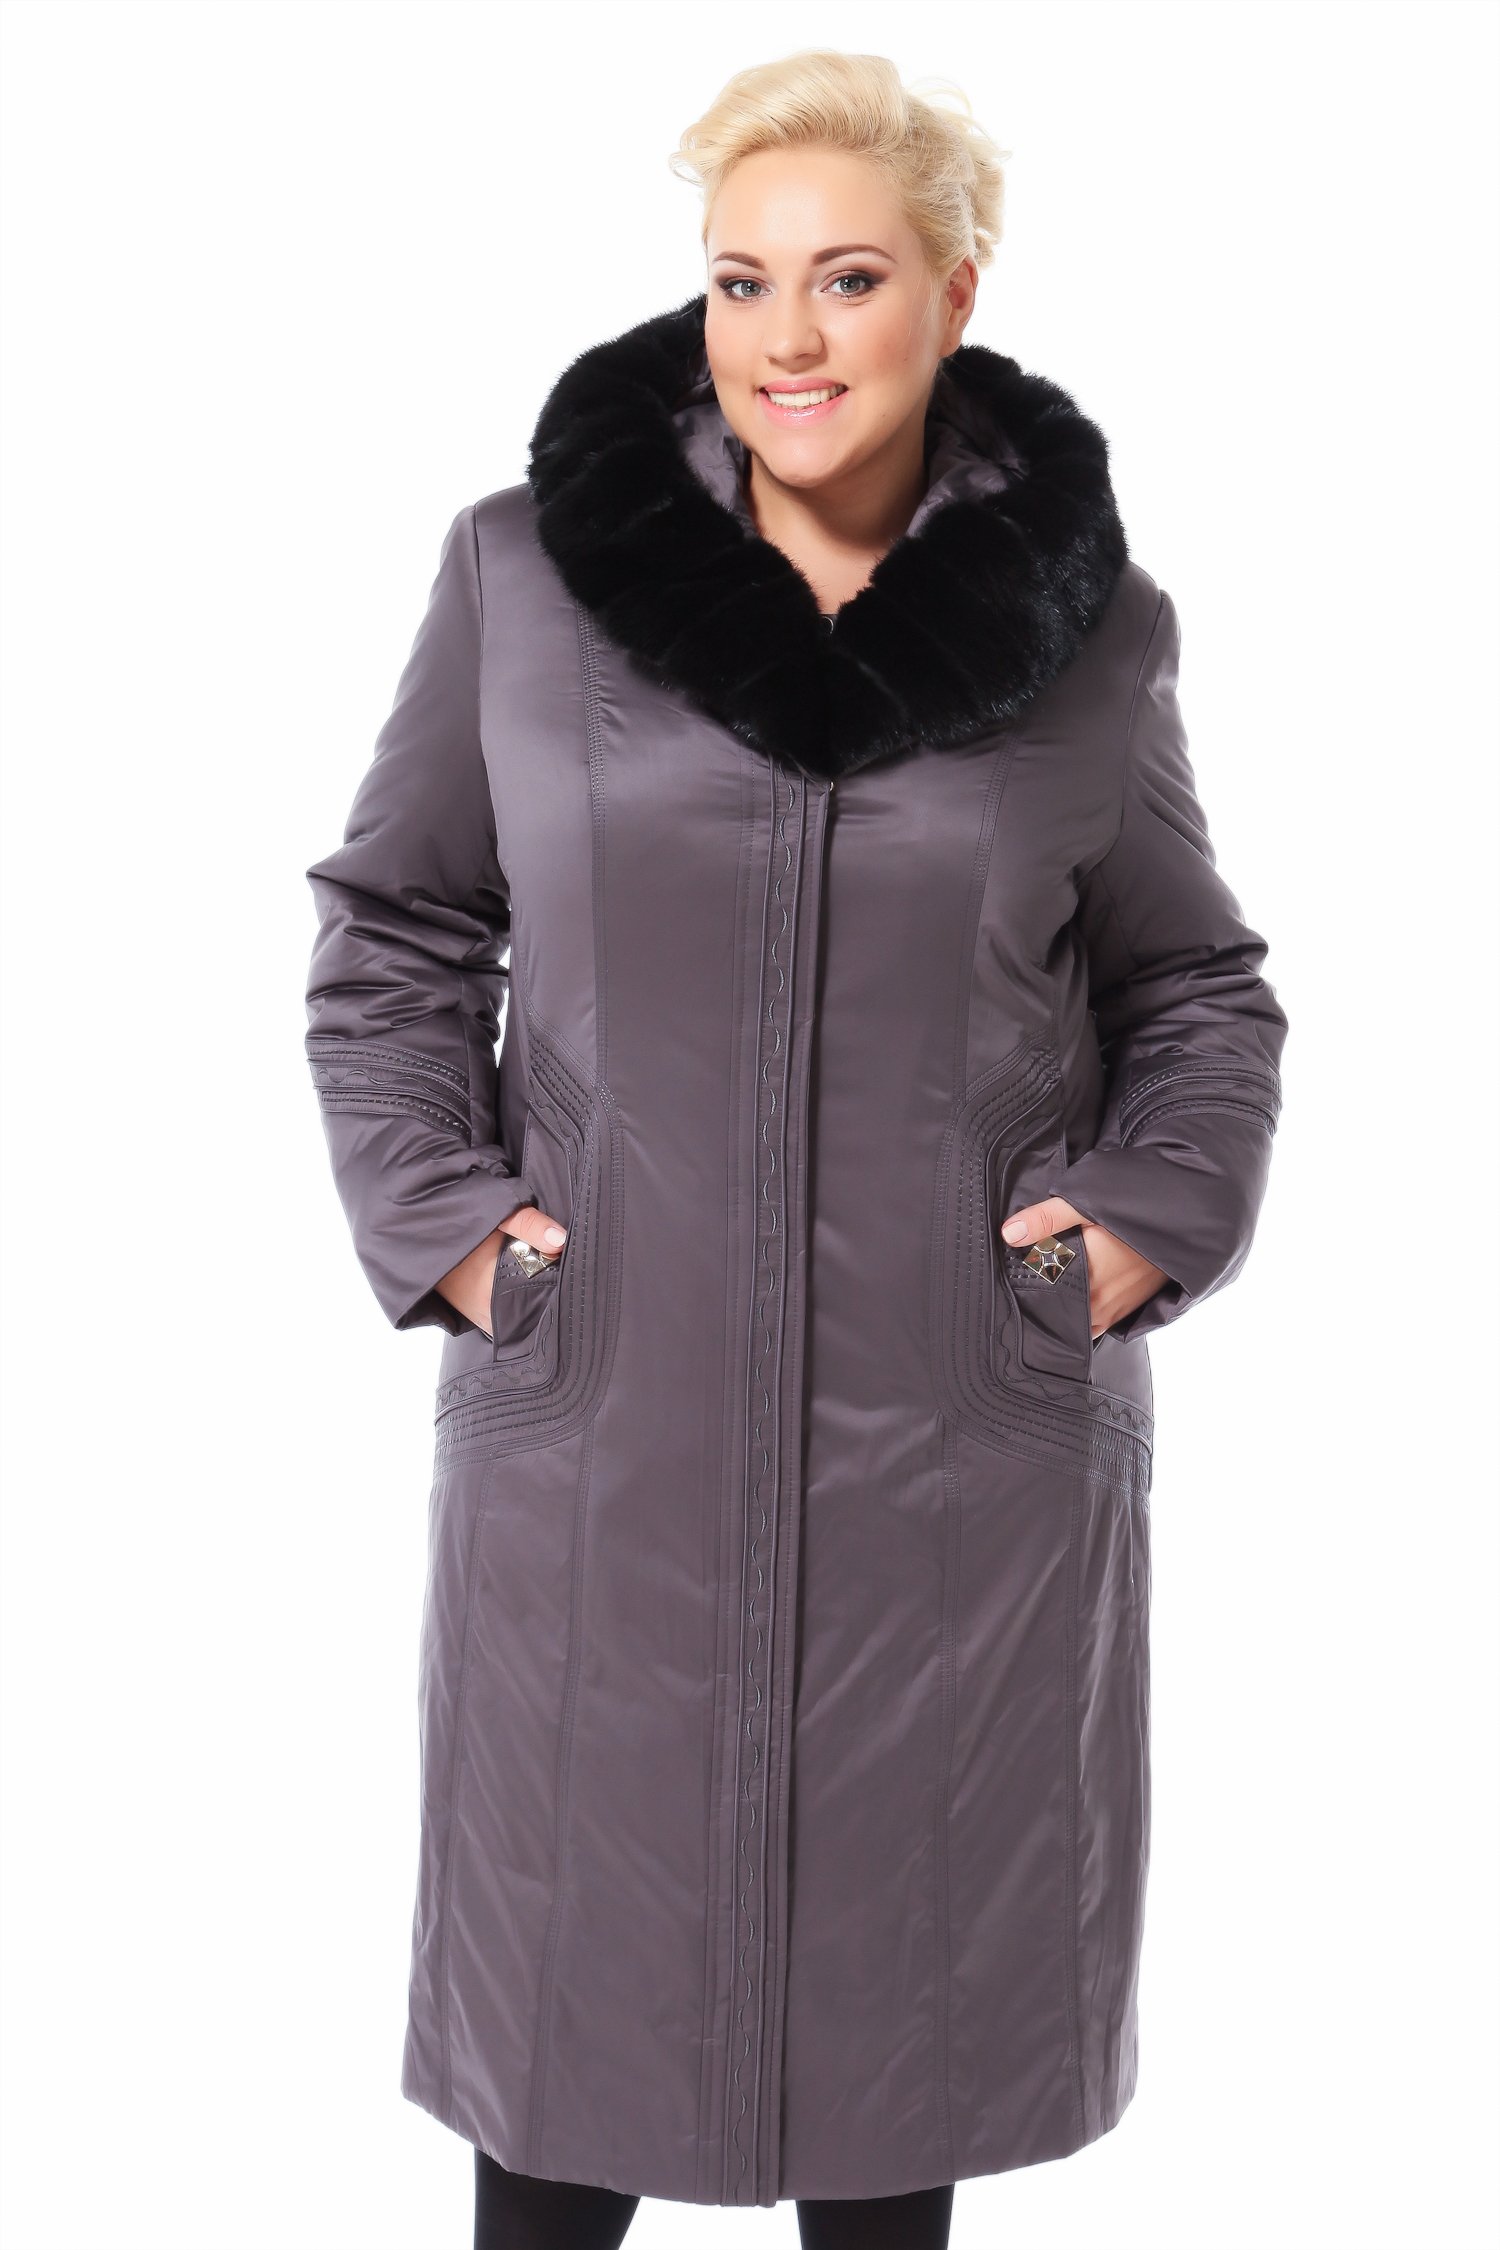 Женский зимнее пальто большого размера купить. Пальто зимнее женское больших размеров. Зимнее пальто женское с мехом. Пальто плащевое с мехом. Пальто плащевое с натуральным мехом.